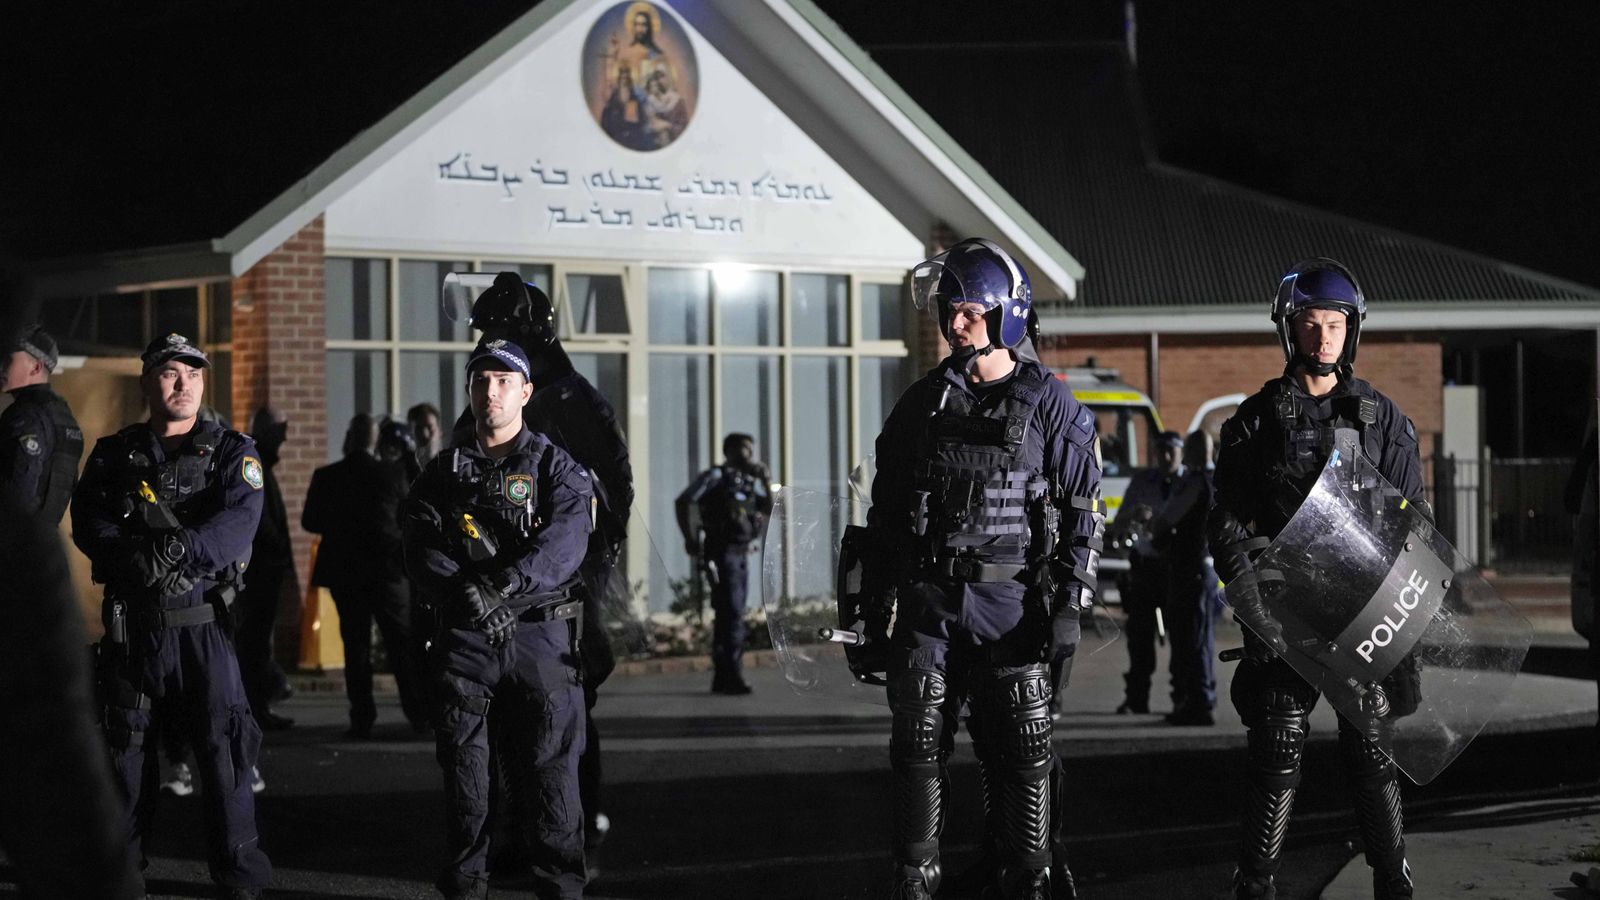 Die australische Polizei erklärt den Angriff auf eine Kirche in Sydney umgehend zu einem „terroristischen“ Vorfall